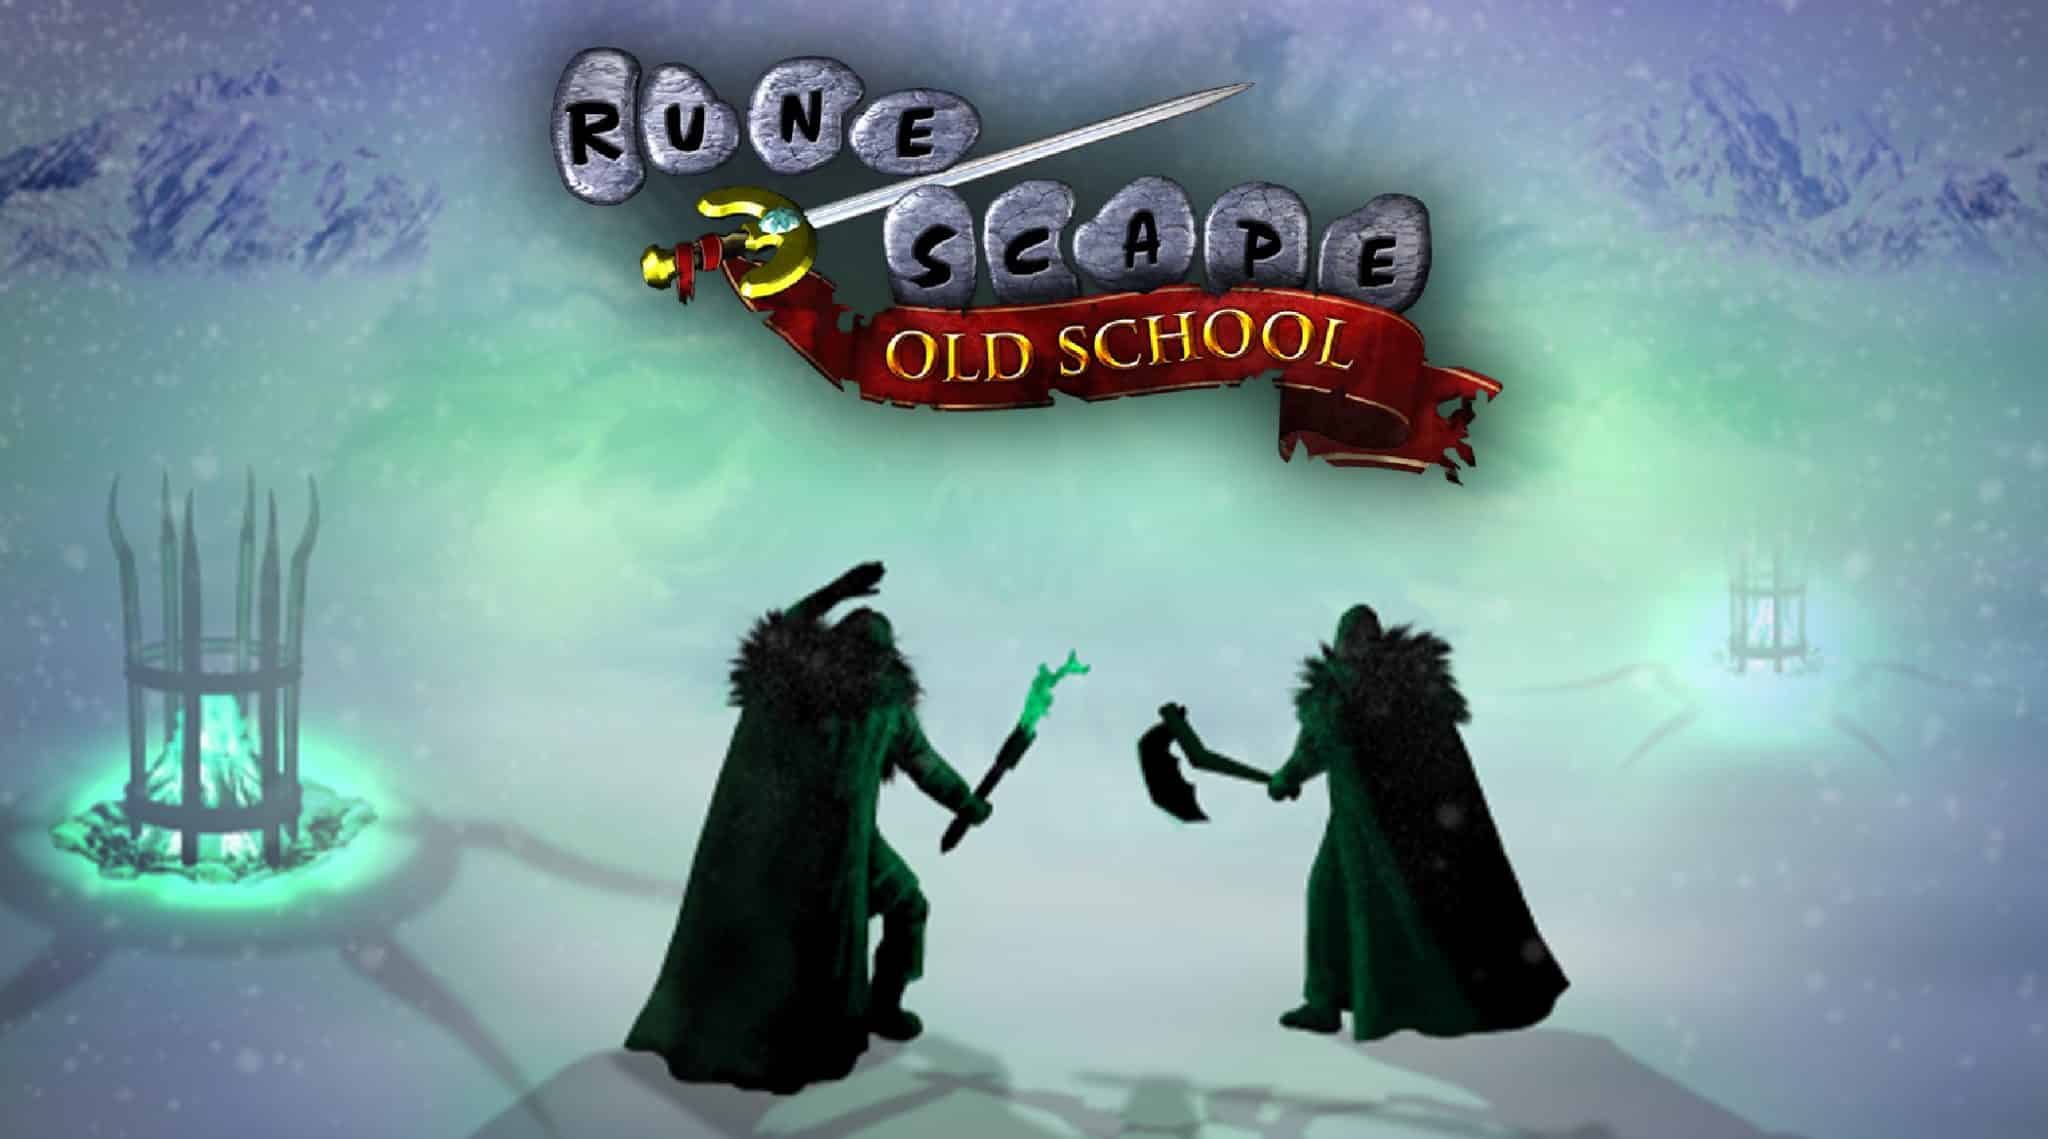 Old school Runescape gameplay